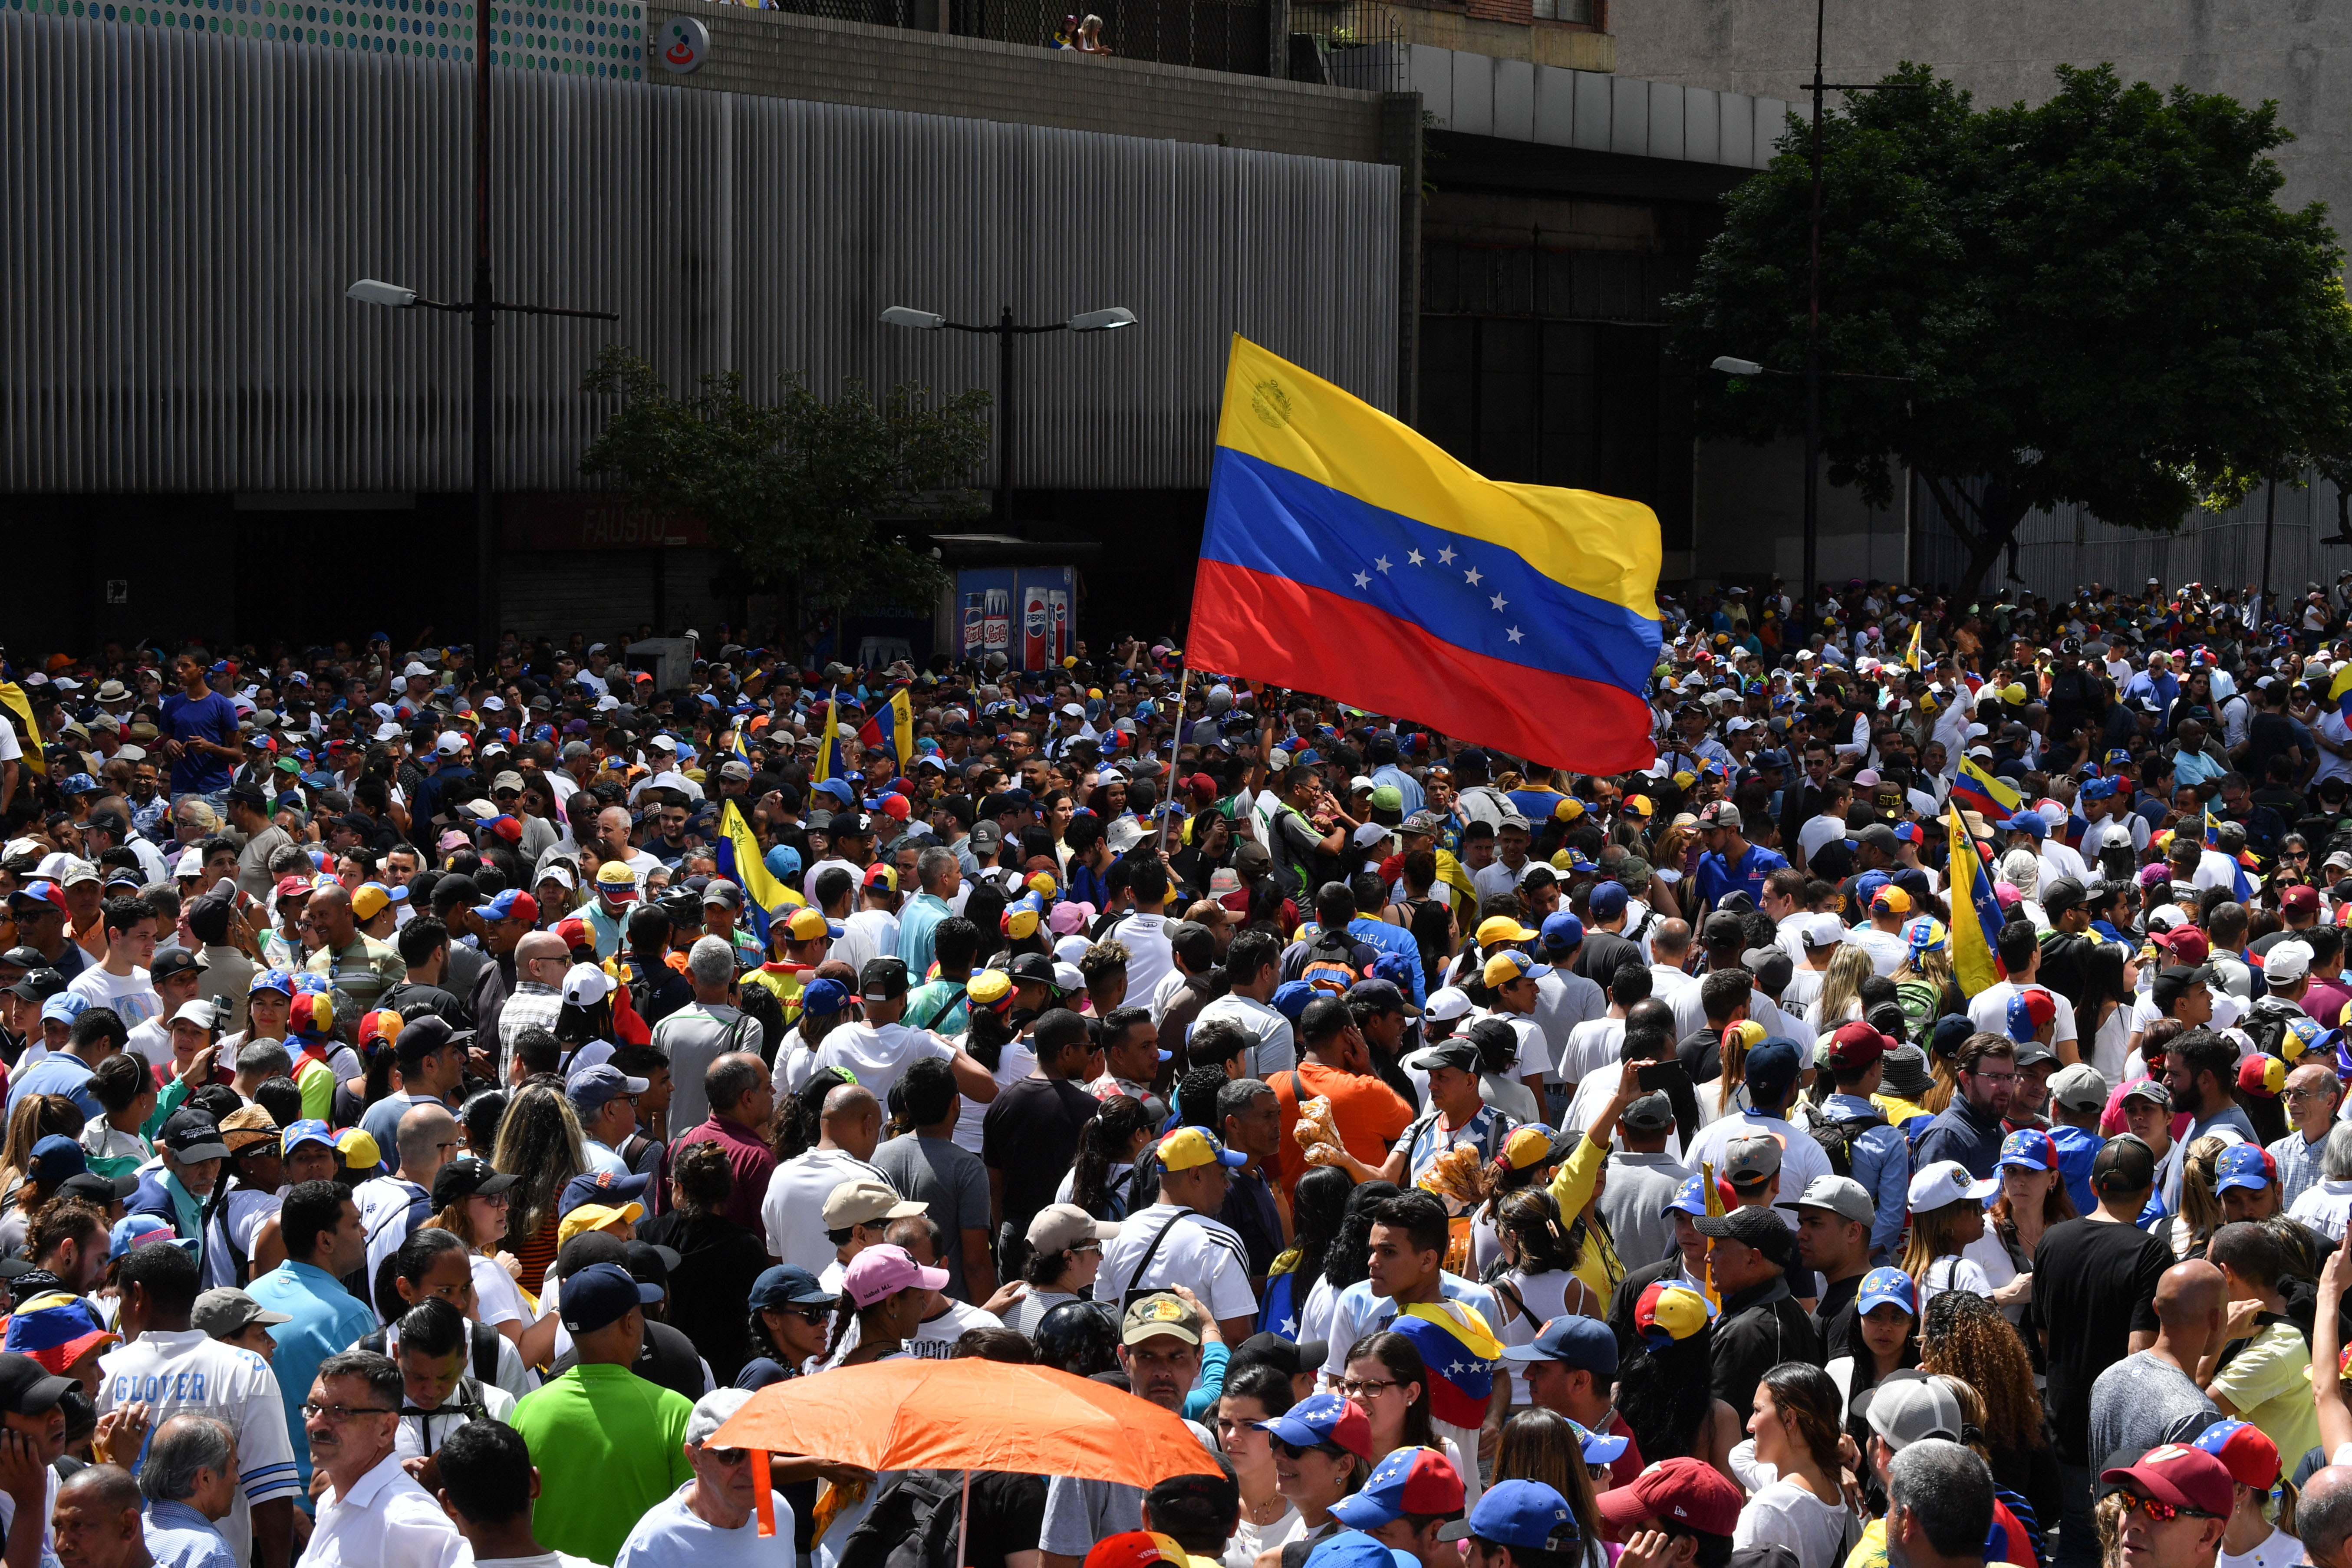 Partidarios de la oposición venezolana salen a las calles para protestar contra el gobierno del presidente Nicolás Maduro. Crédito: YURI CORTEZ / AFP / Getty Images